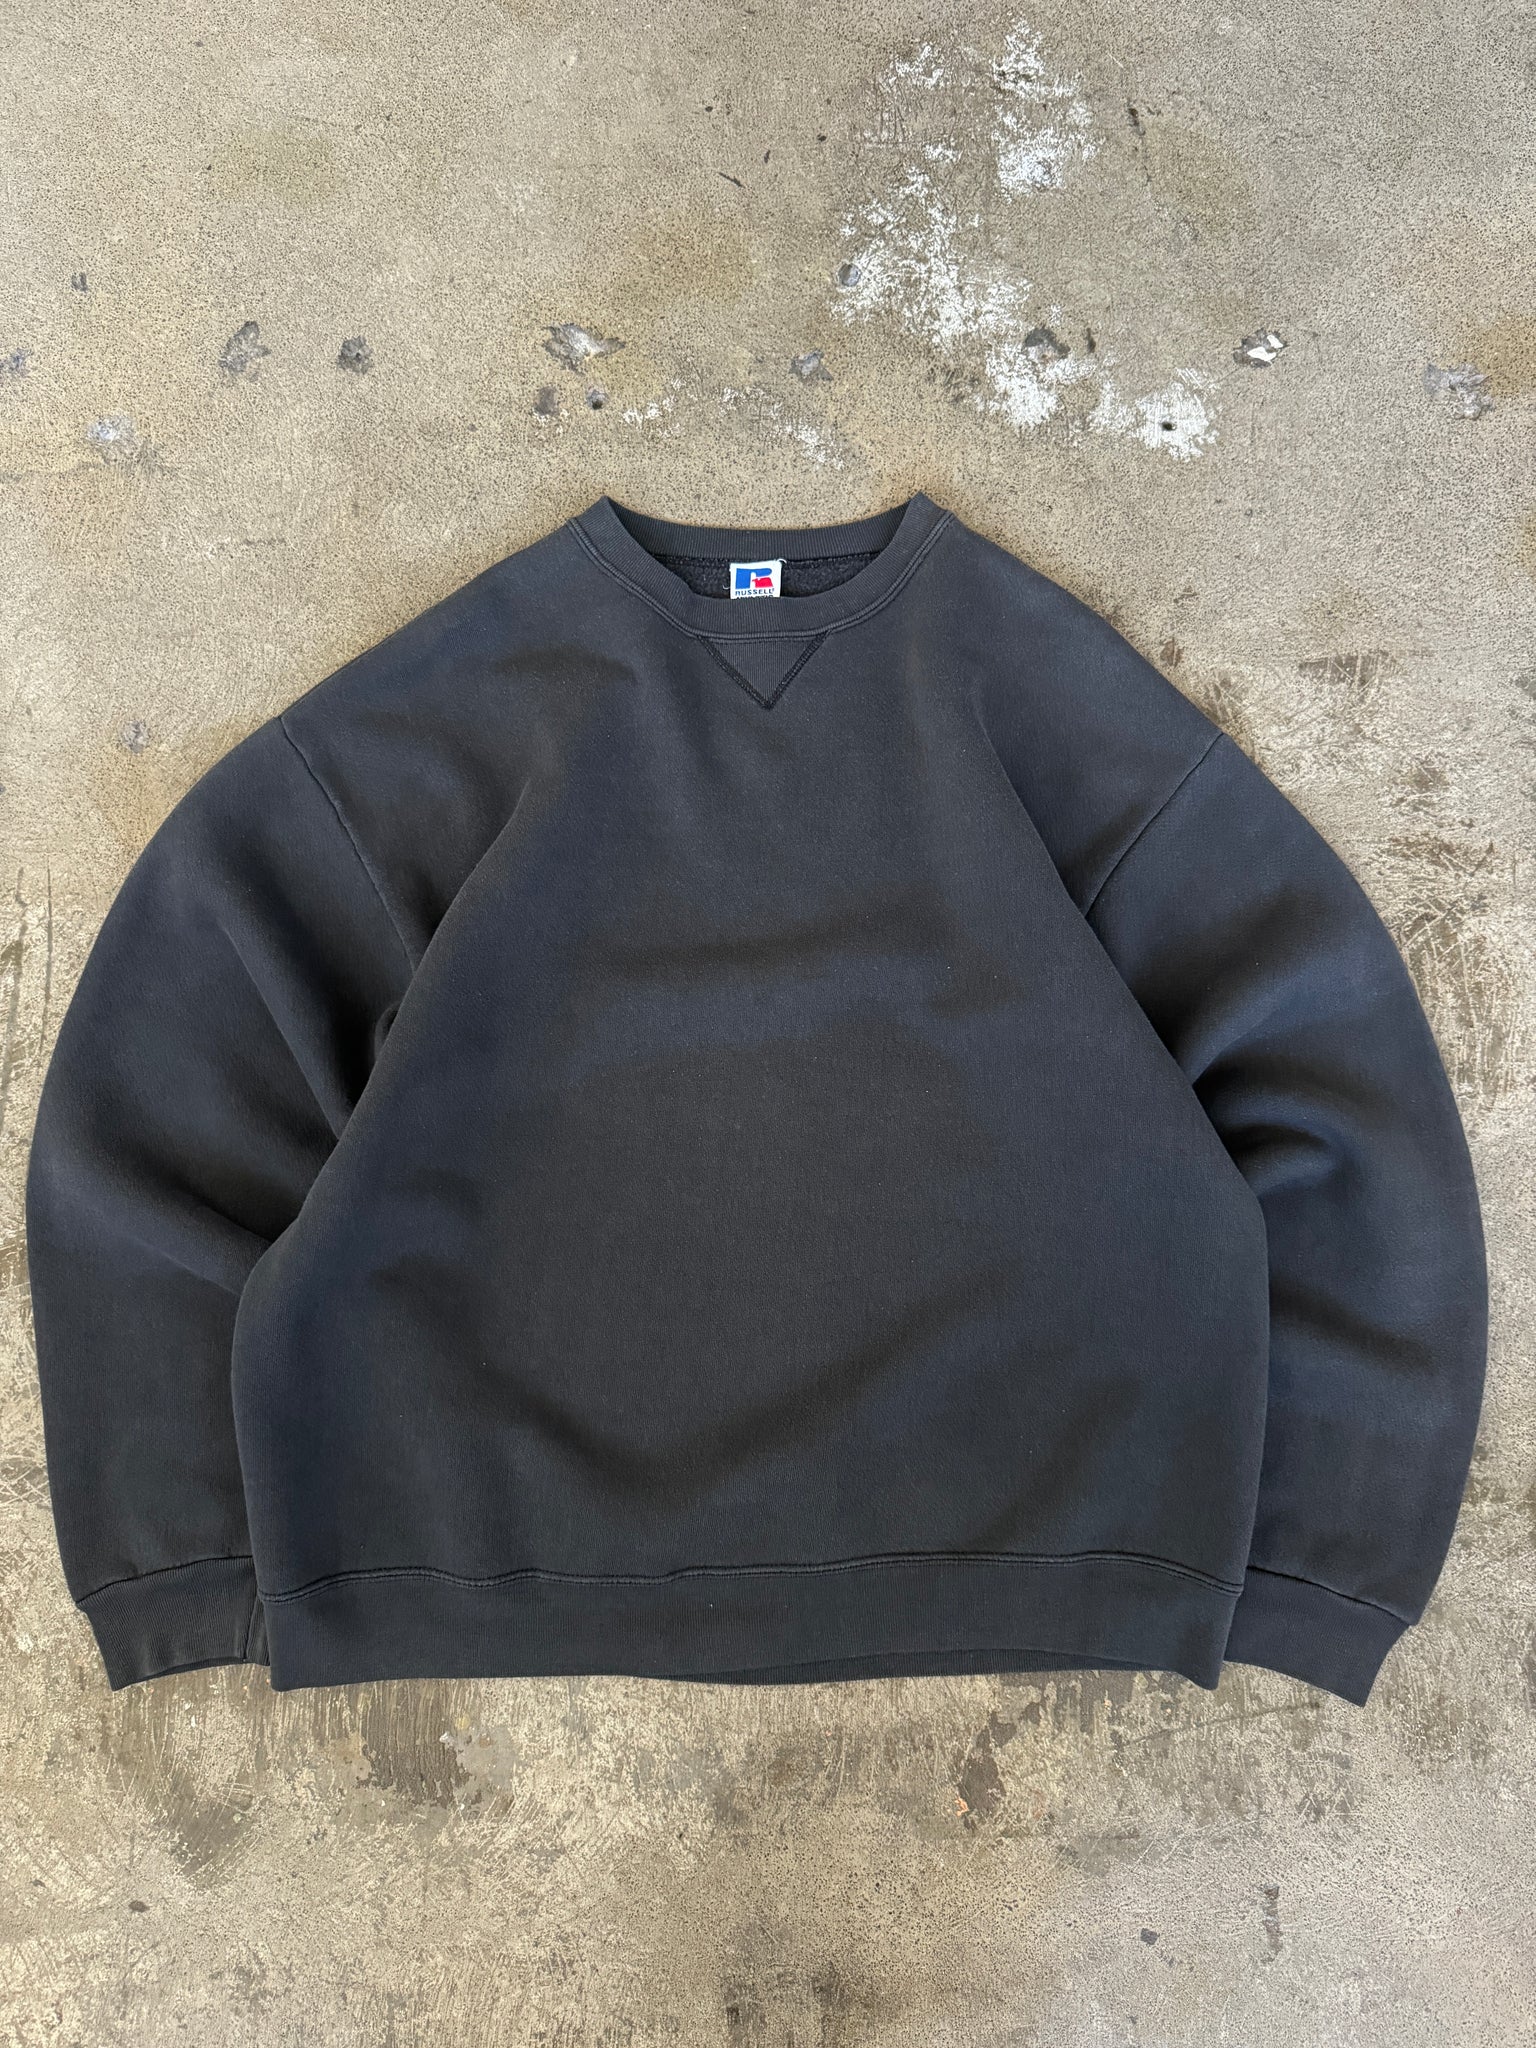 Vintage Black Faded Russell Athletics Sweatshirt (L)